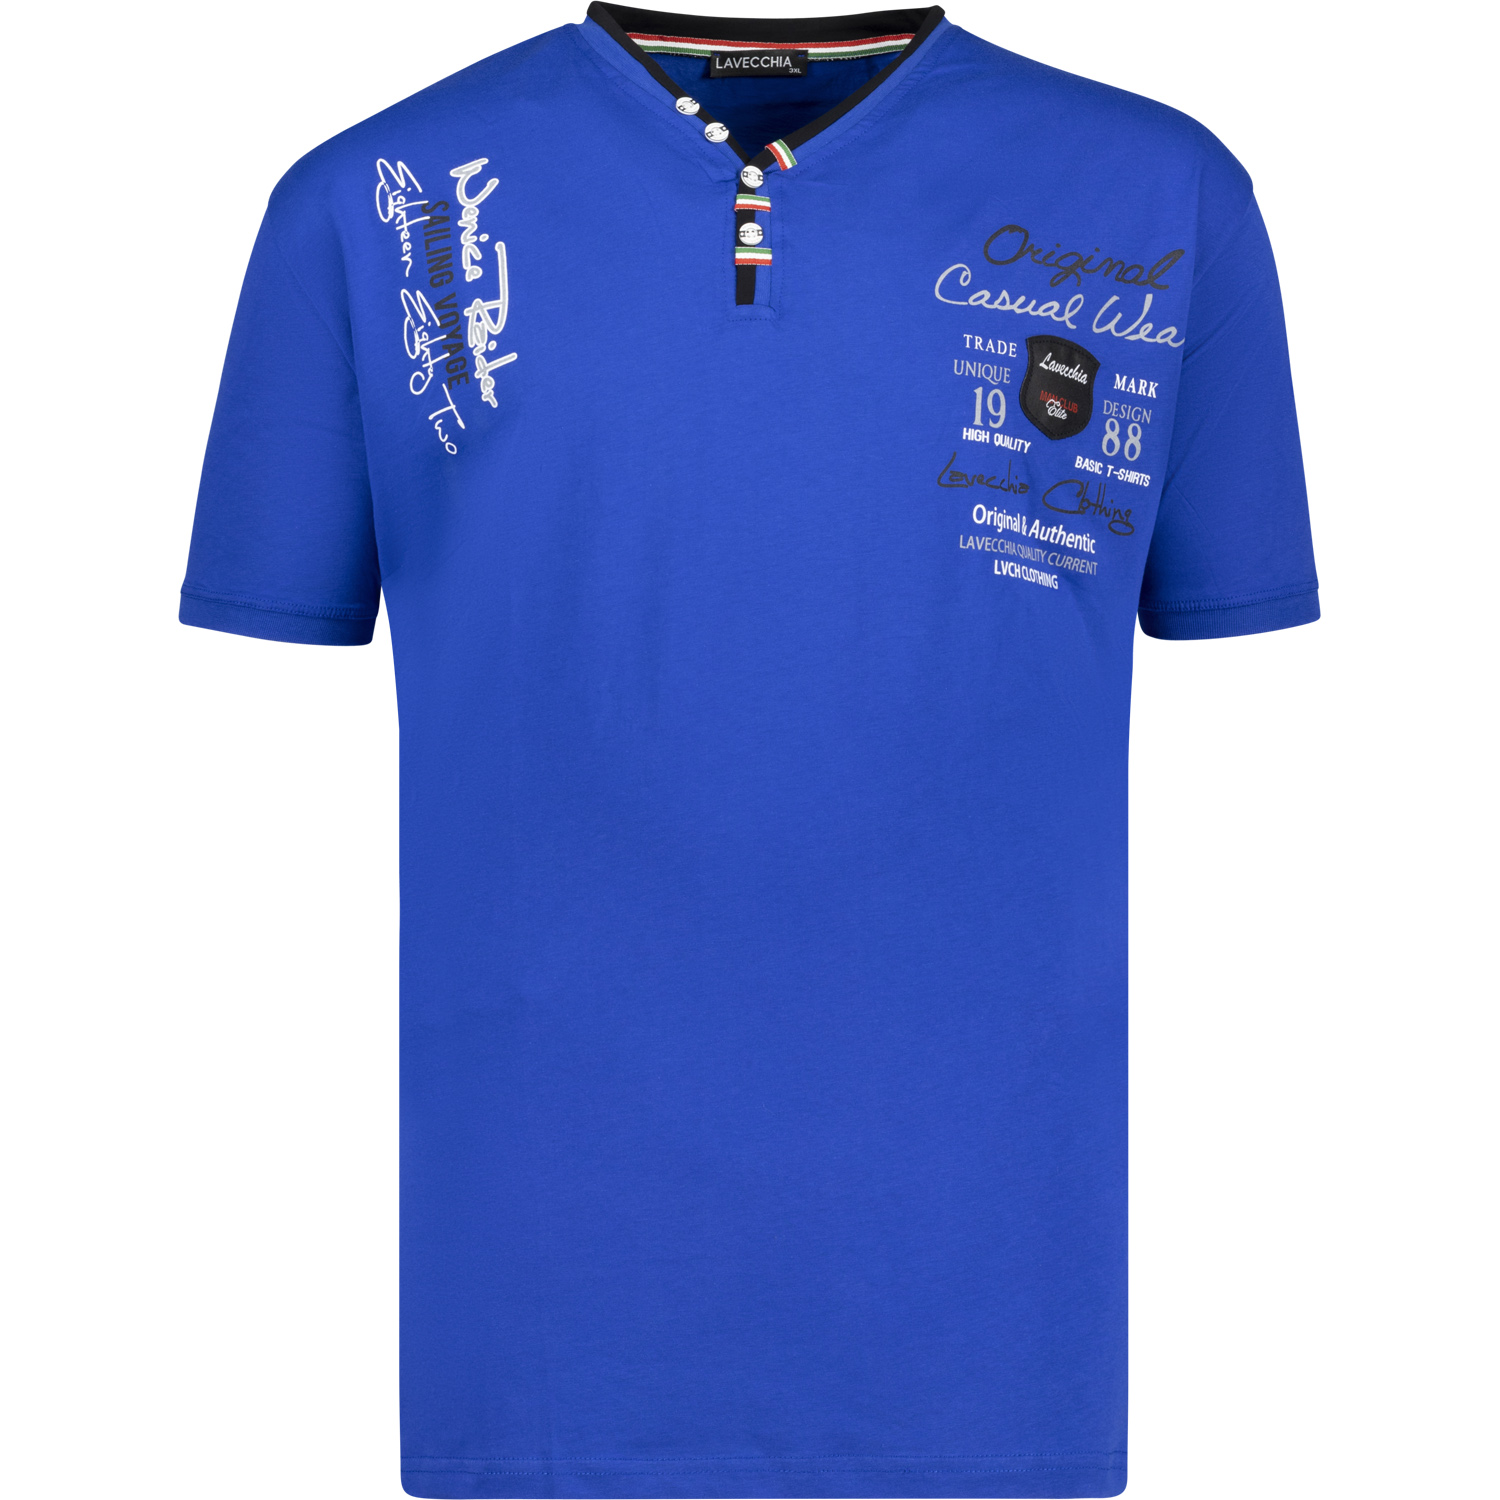 LAVECCHIA kurzarm Shirt für Herren in Übergrößen bis 8XL royalblau mit V-Ausschnitt